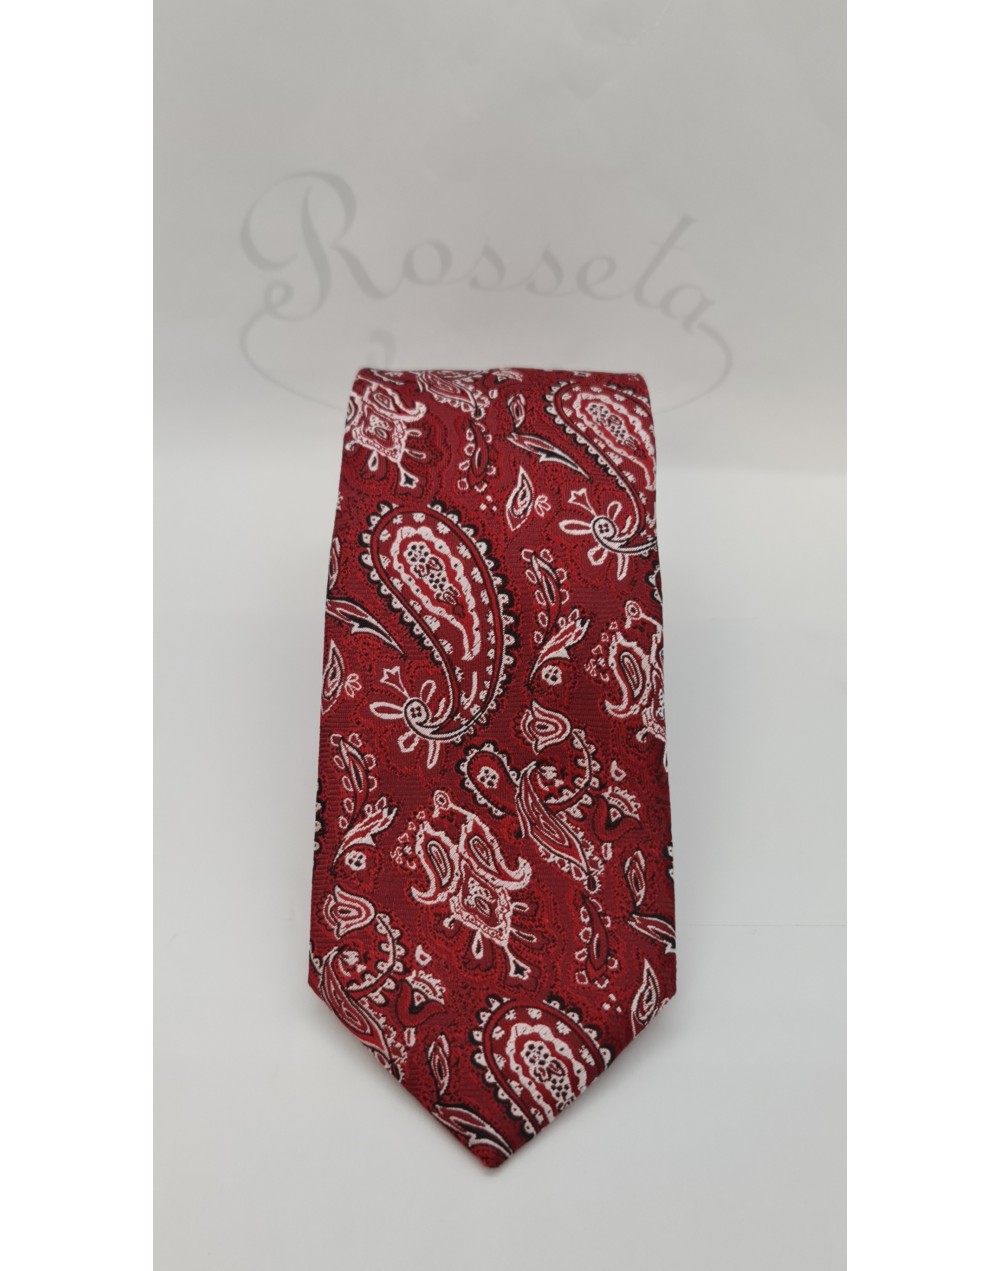 Corbata estampado cachemir rojo